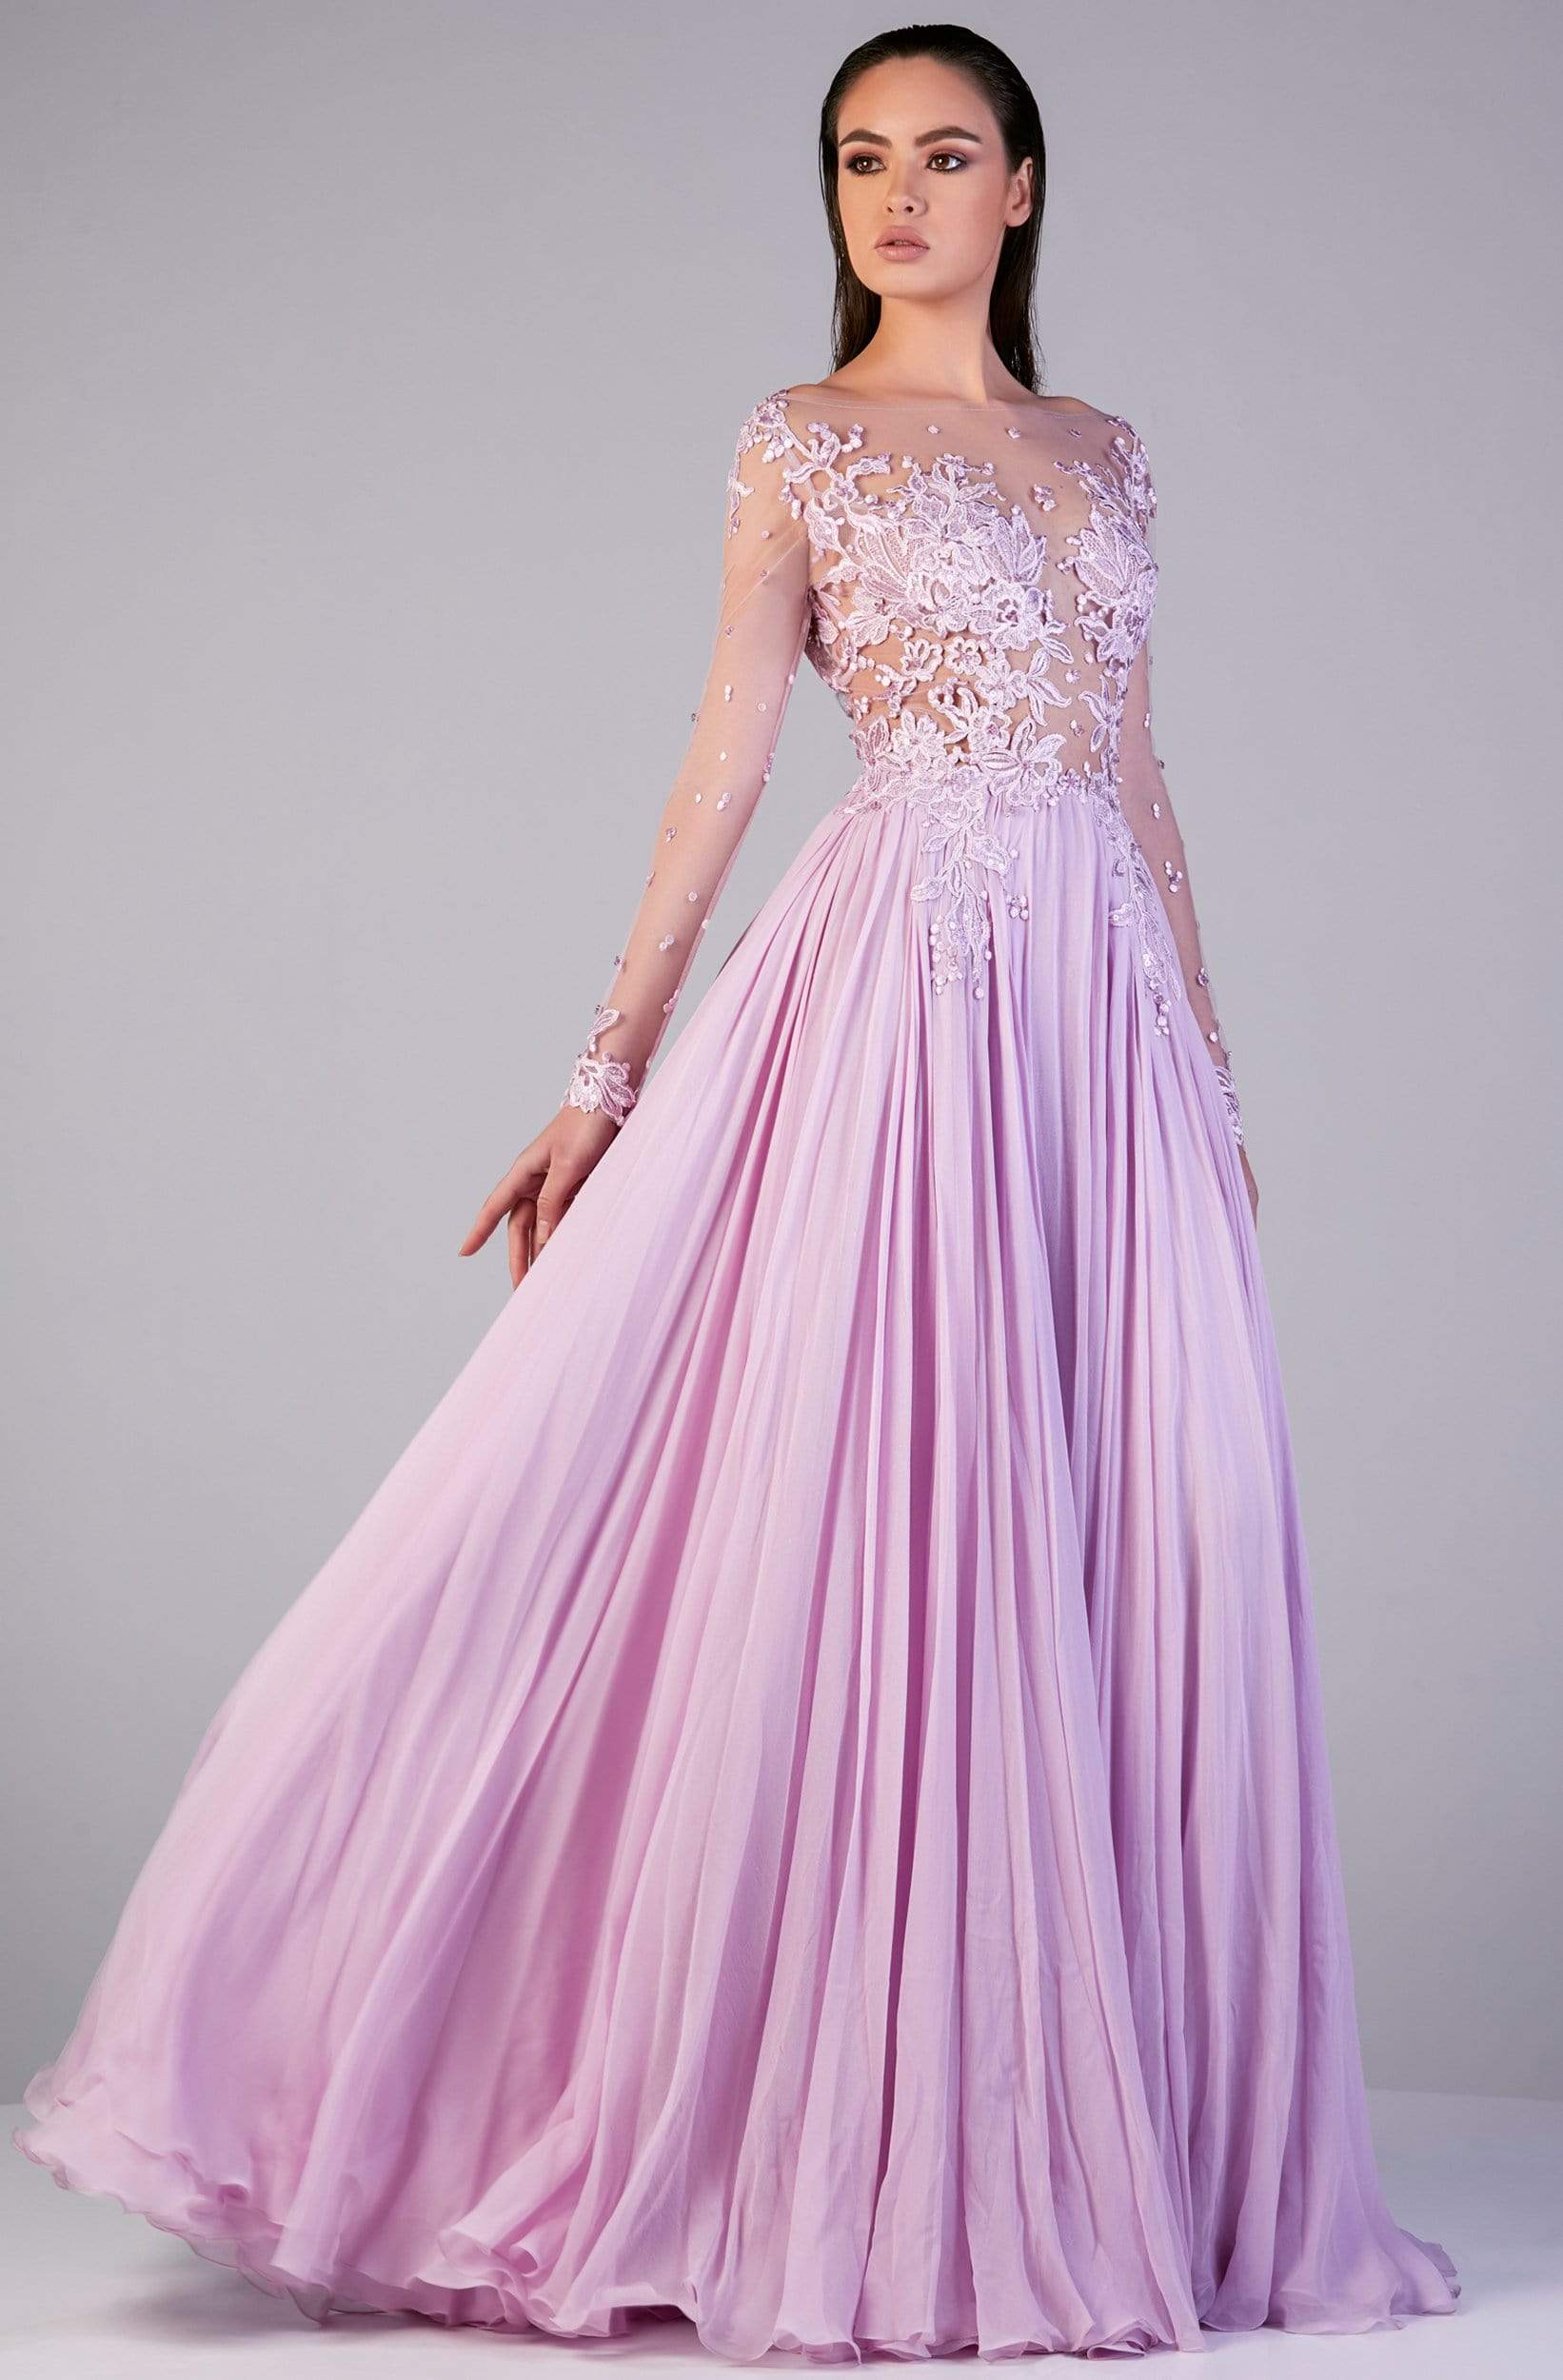 Gatti Nolli Couture - OP-5152 Lace Appliqued Illusion A-Line Gown
